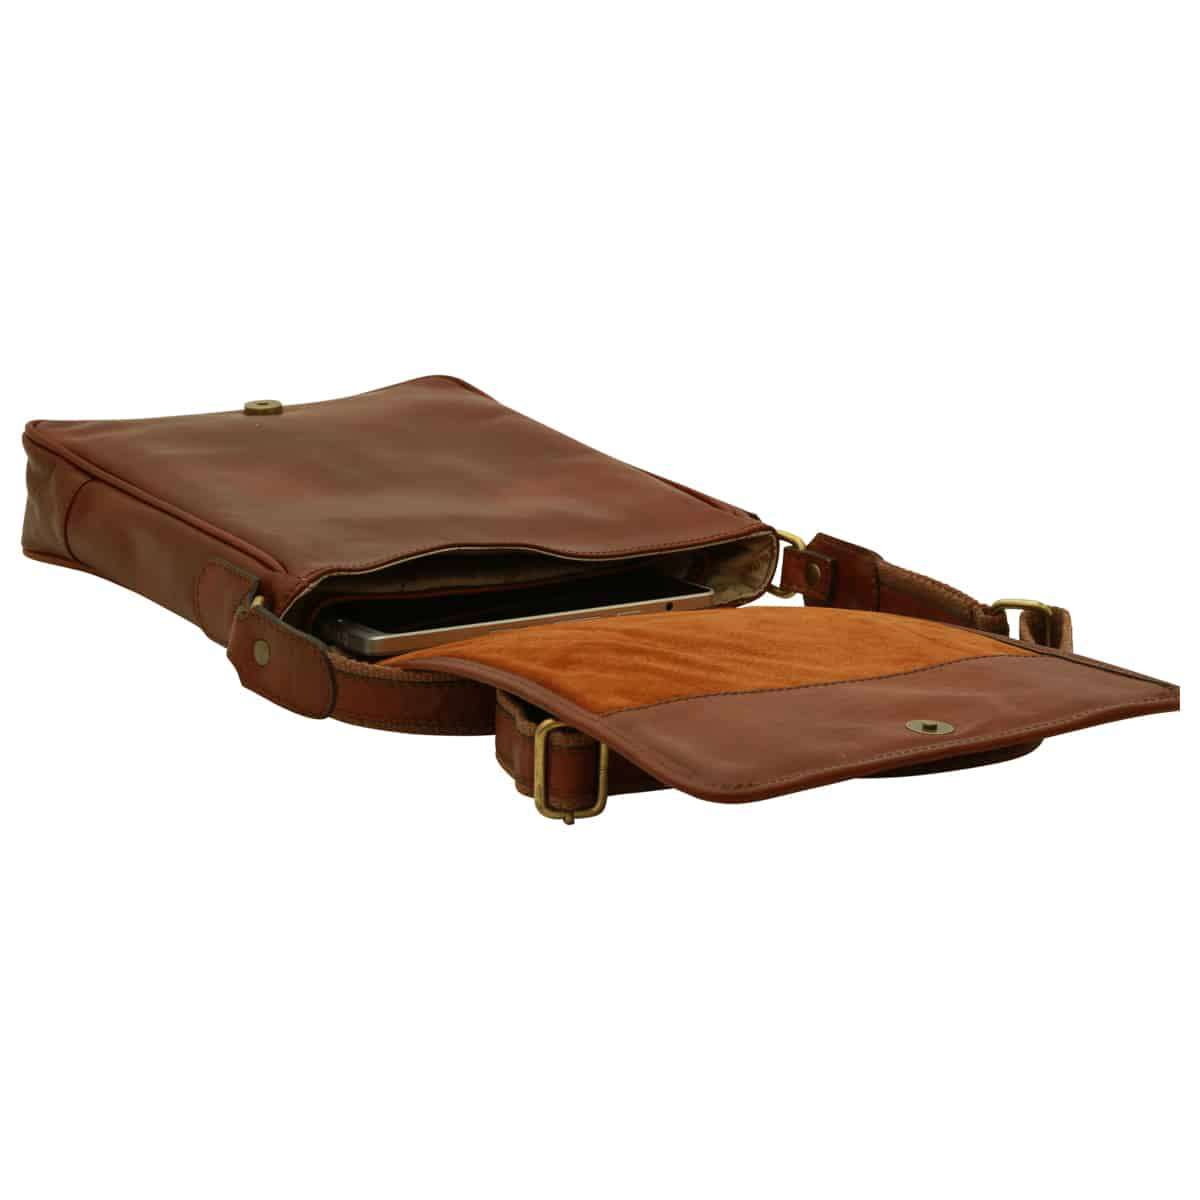 Soft Calfskin Leather Satchel Bag - Brown | 031091MA UK | Old Angler Firenze